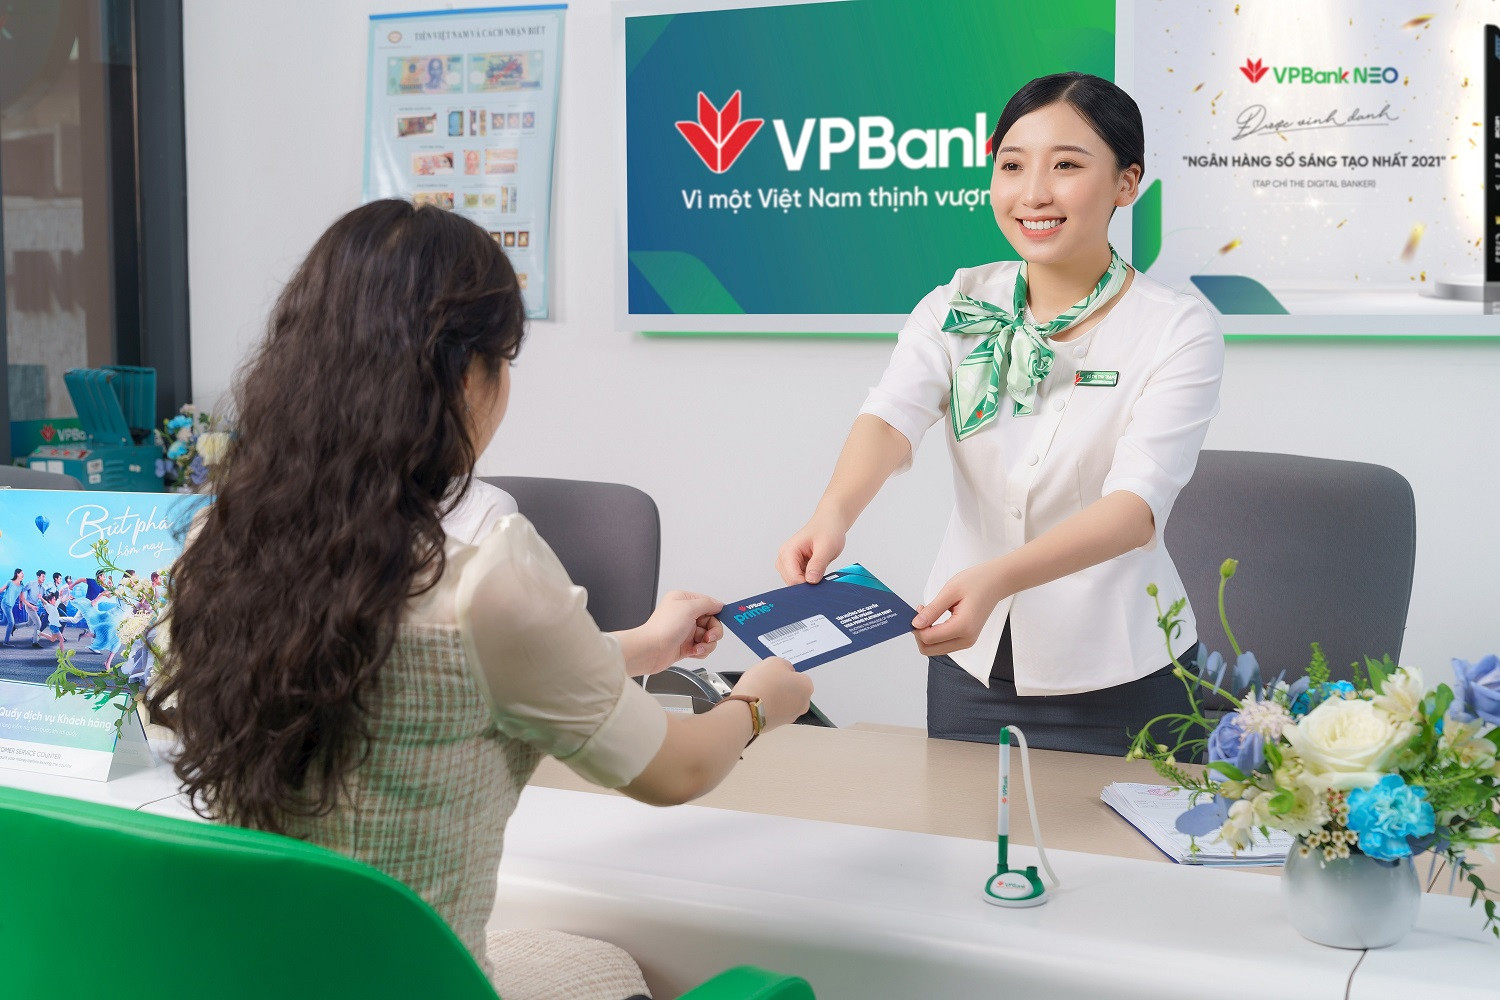 Khi phát hành thành công VPBank sẽ trở thành ngân hàng có vốn điều lệ lớn nhất hệ thống với quy mô vốn là 67.433 tỷ đồng hơn cả BIDV, VietinBank và Vietcombank.